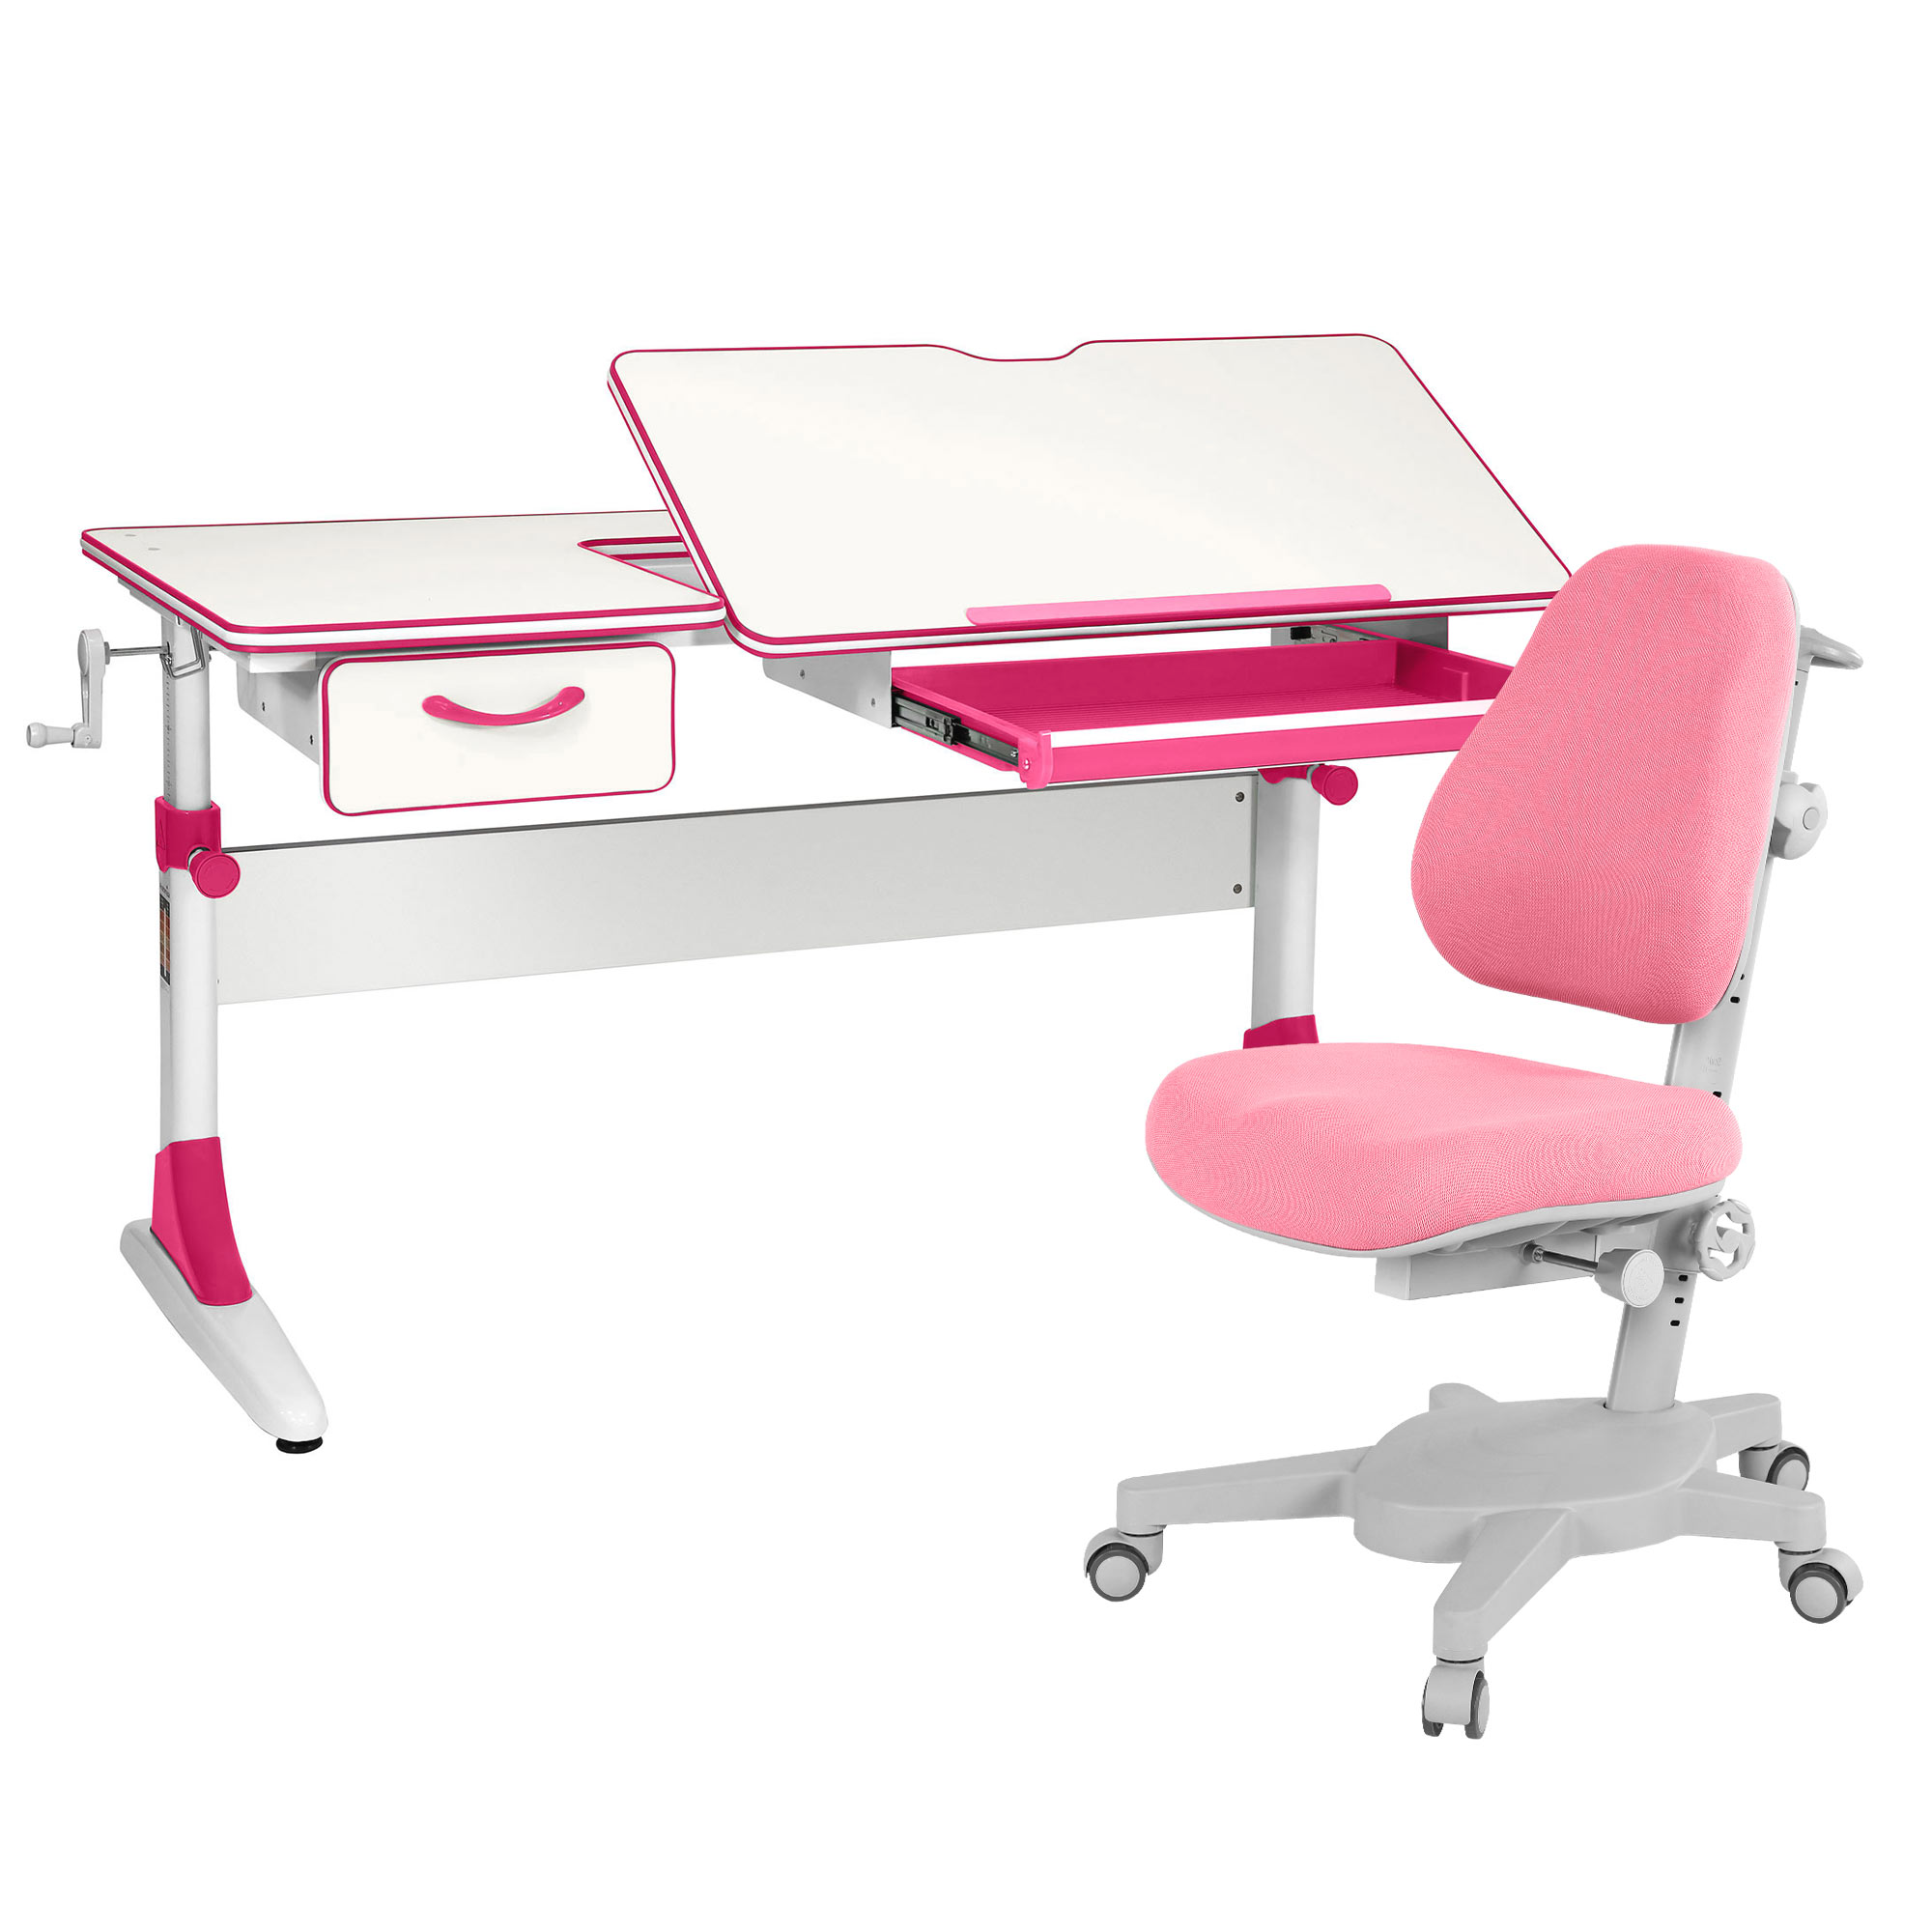 Комплект парта Anatomica Study-120 белый/розовый с розовым креслом Armata комплект парта anatomica study 120 белый розовый с розовым креслом figra